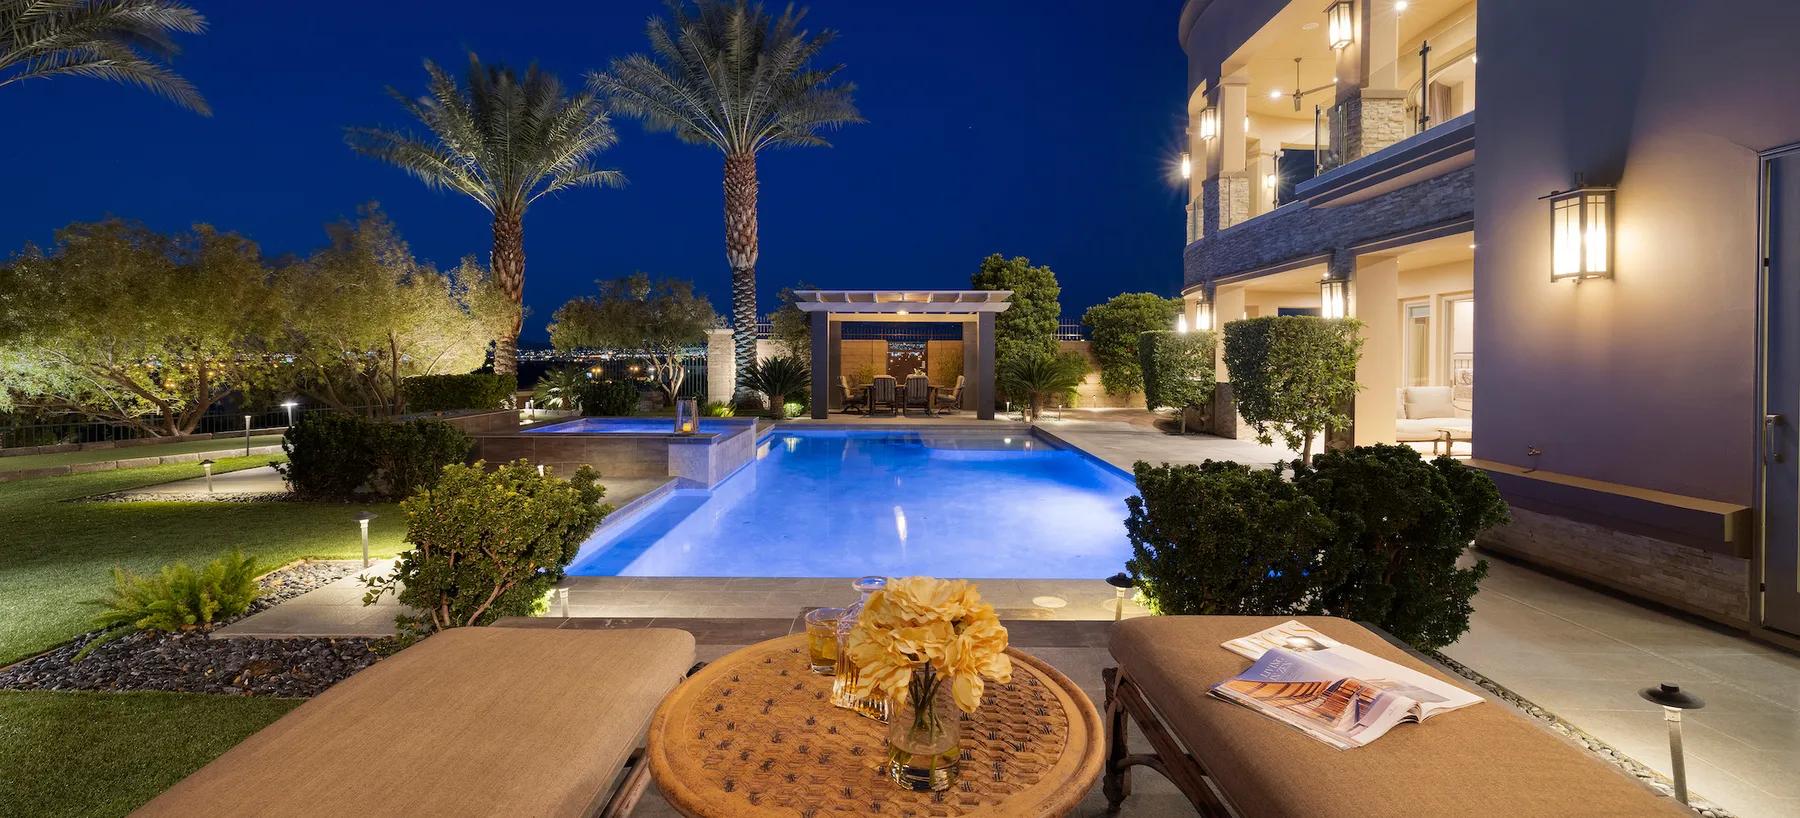 Find Luxury Real Estate in Las Vegas | Corcoran Global Living